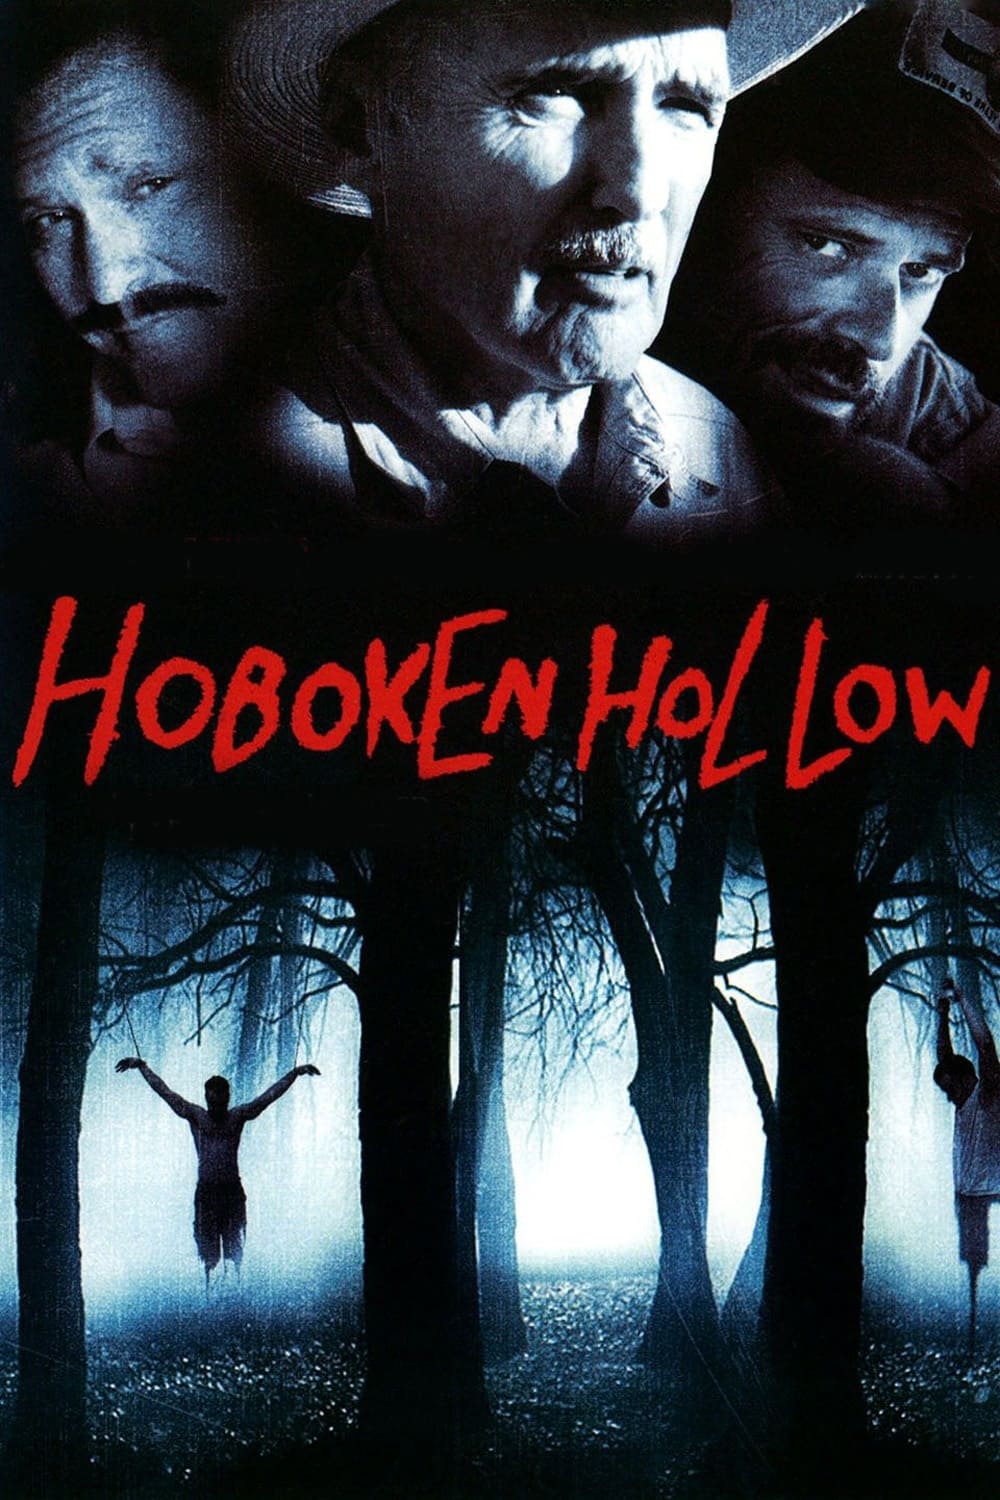 Hoboken Hollow (2005)